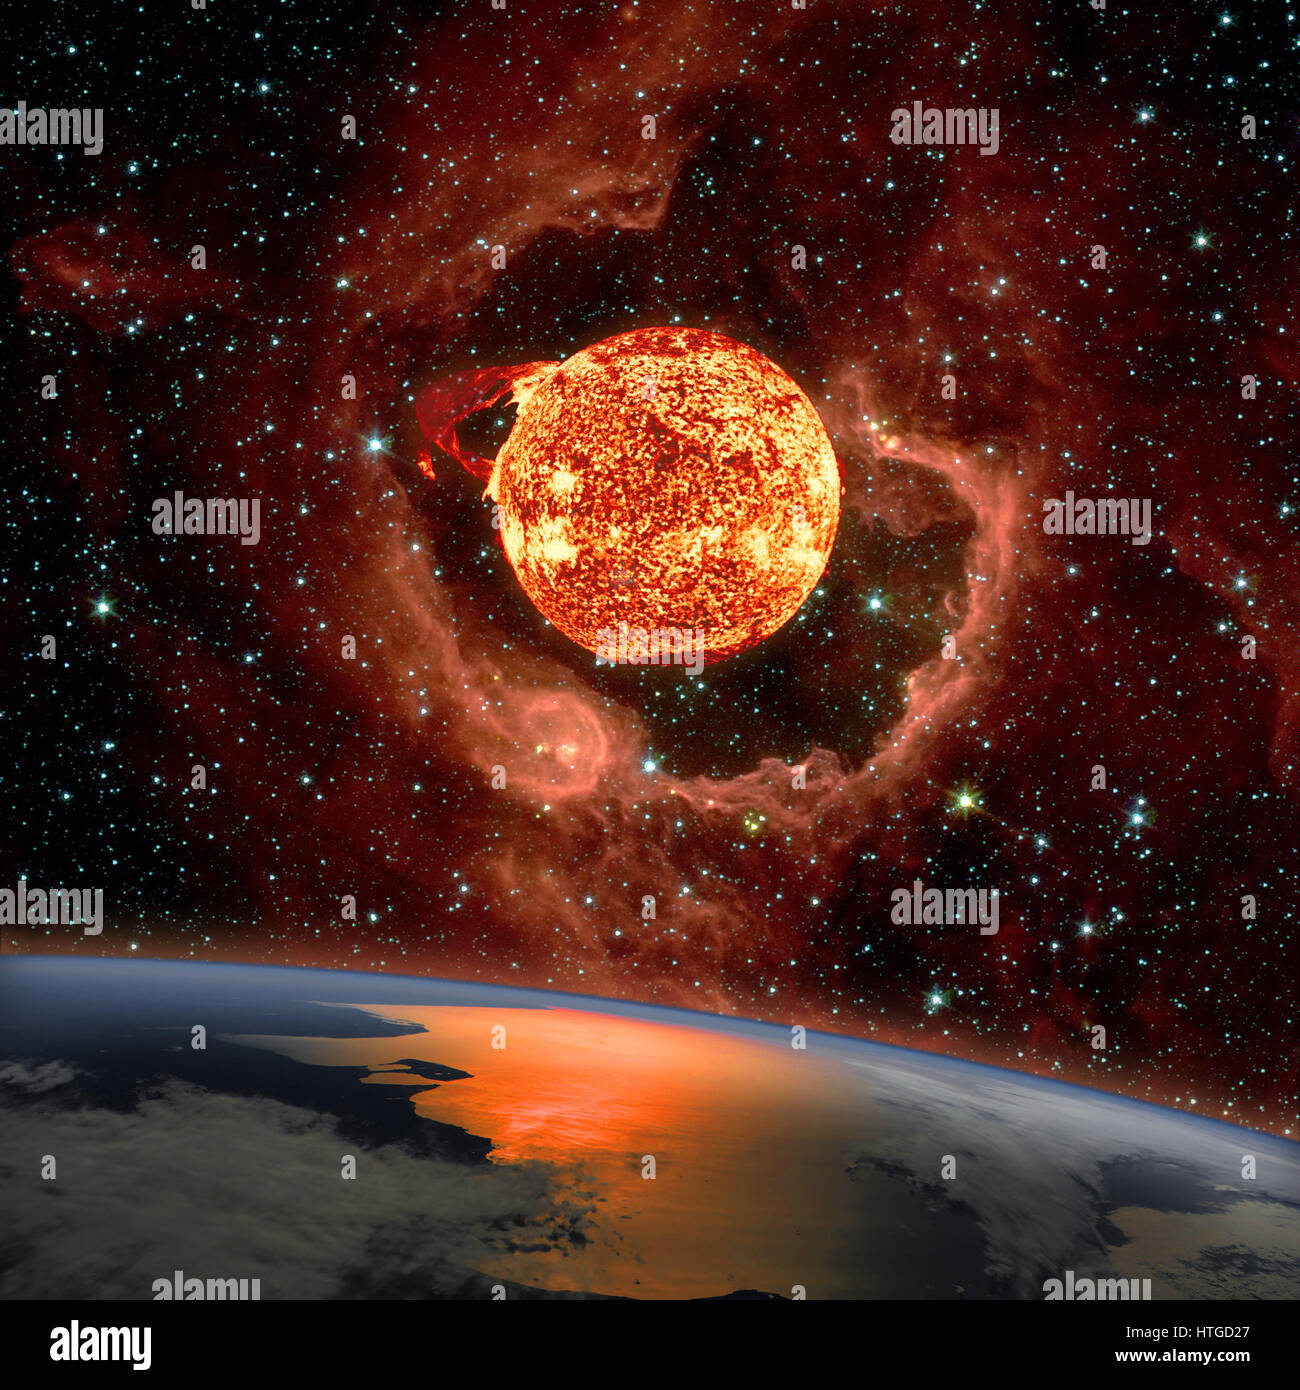 Alba sul pianeta Terra. Il sole in eruzione compare sull'RCW 79 nel sud della Via Lattea nella costellazione del Centauro in background. Eleme Foto Stock